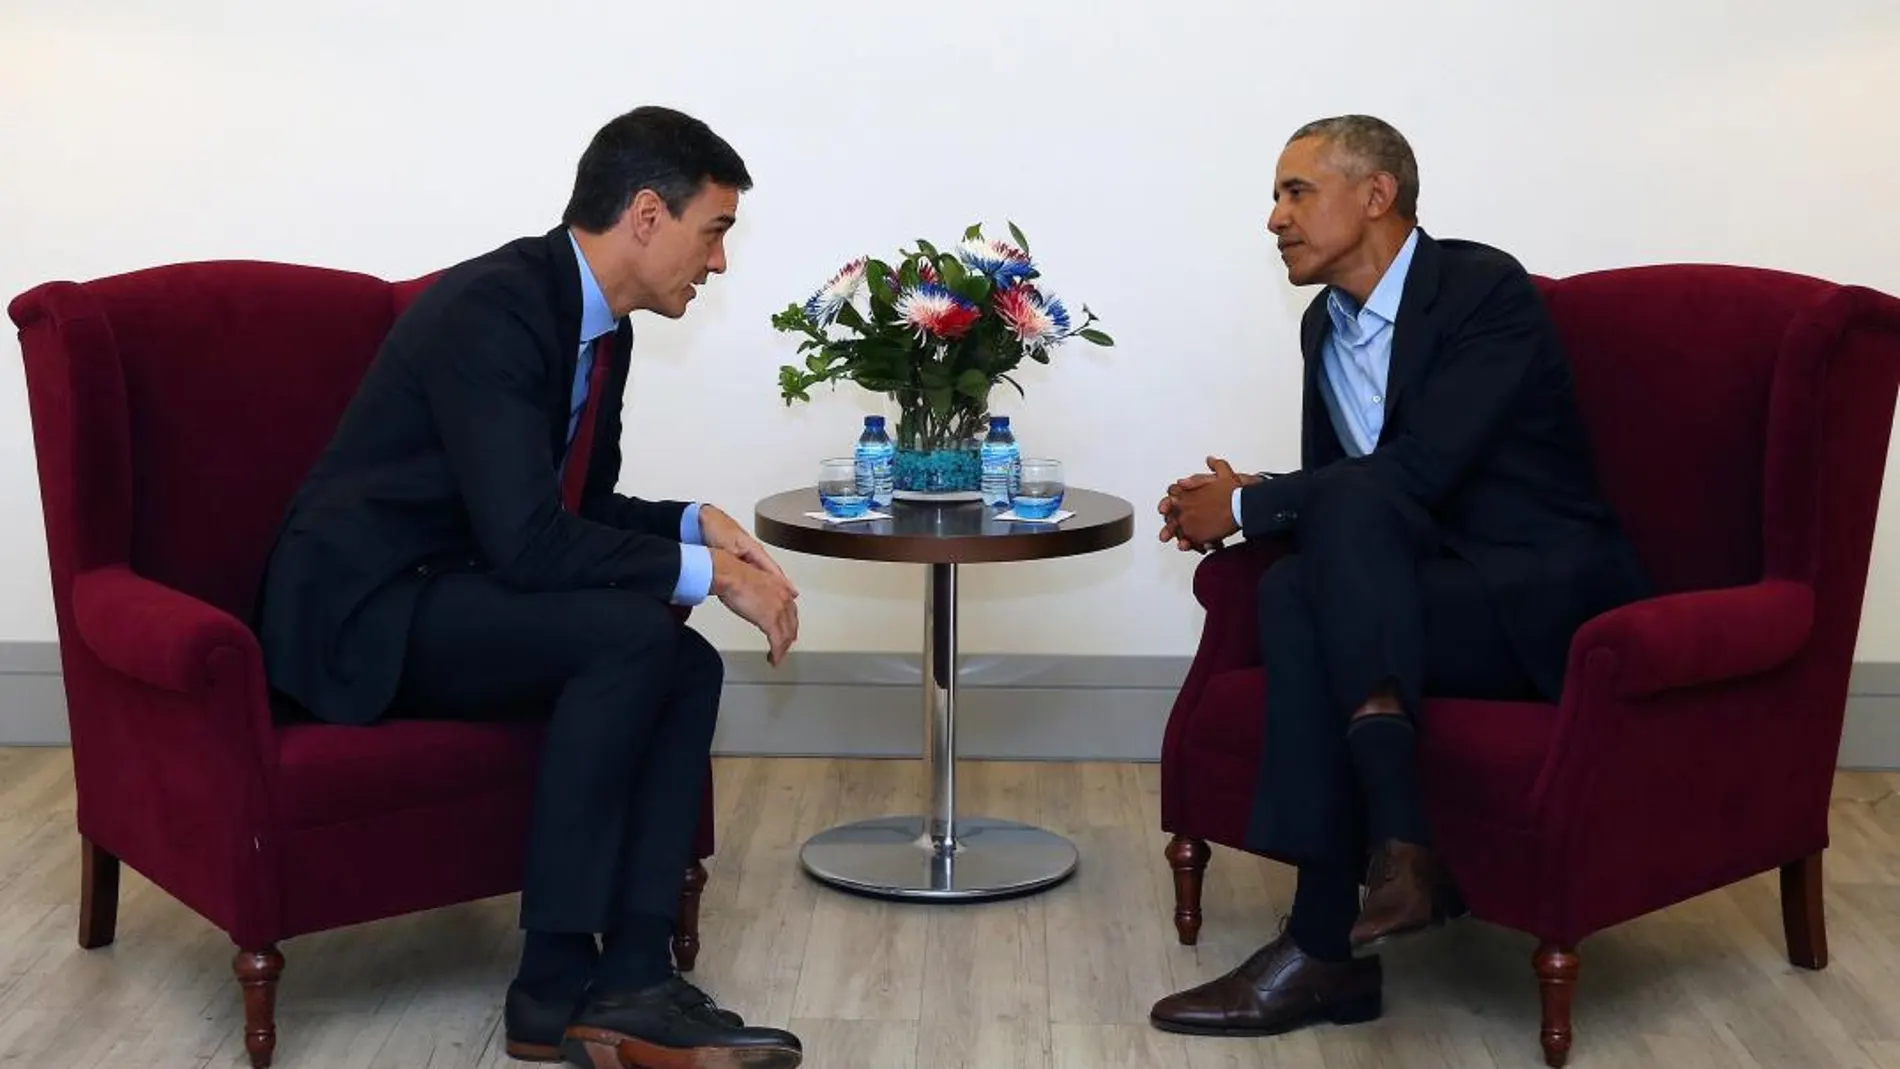 Encuentro entre el Barack Obama y Pedro Sánchez en la cumbre organizada en Madrid por la Advanced Leadership Foundation (ALF). EFE/ Fernando Calvo